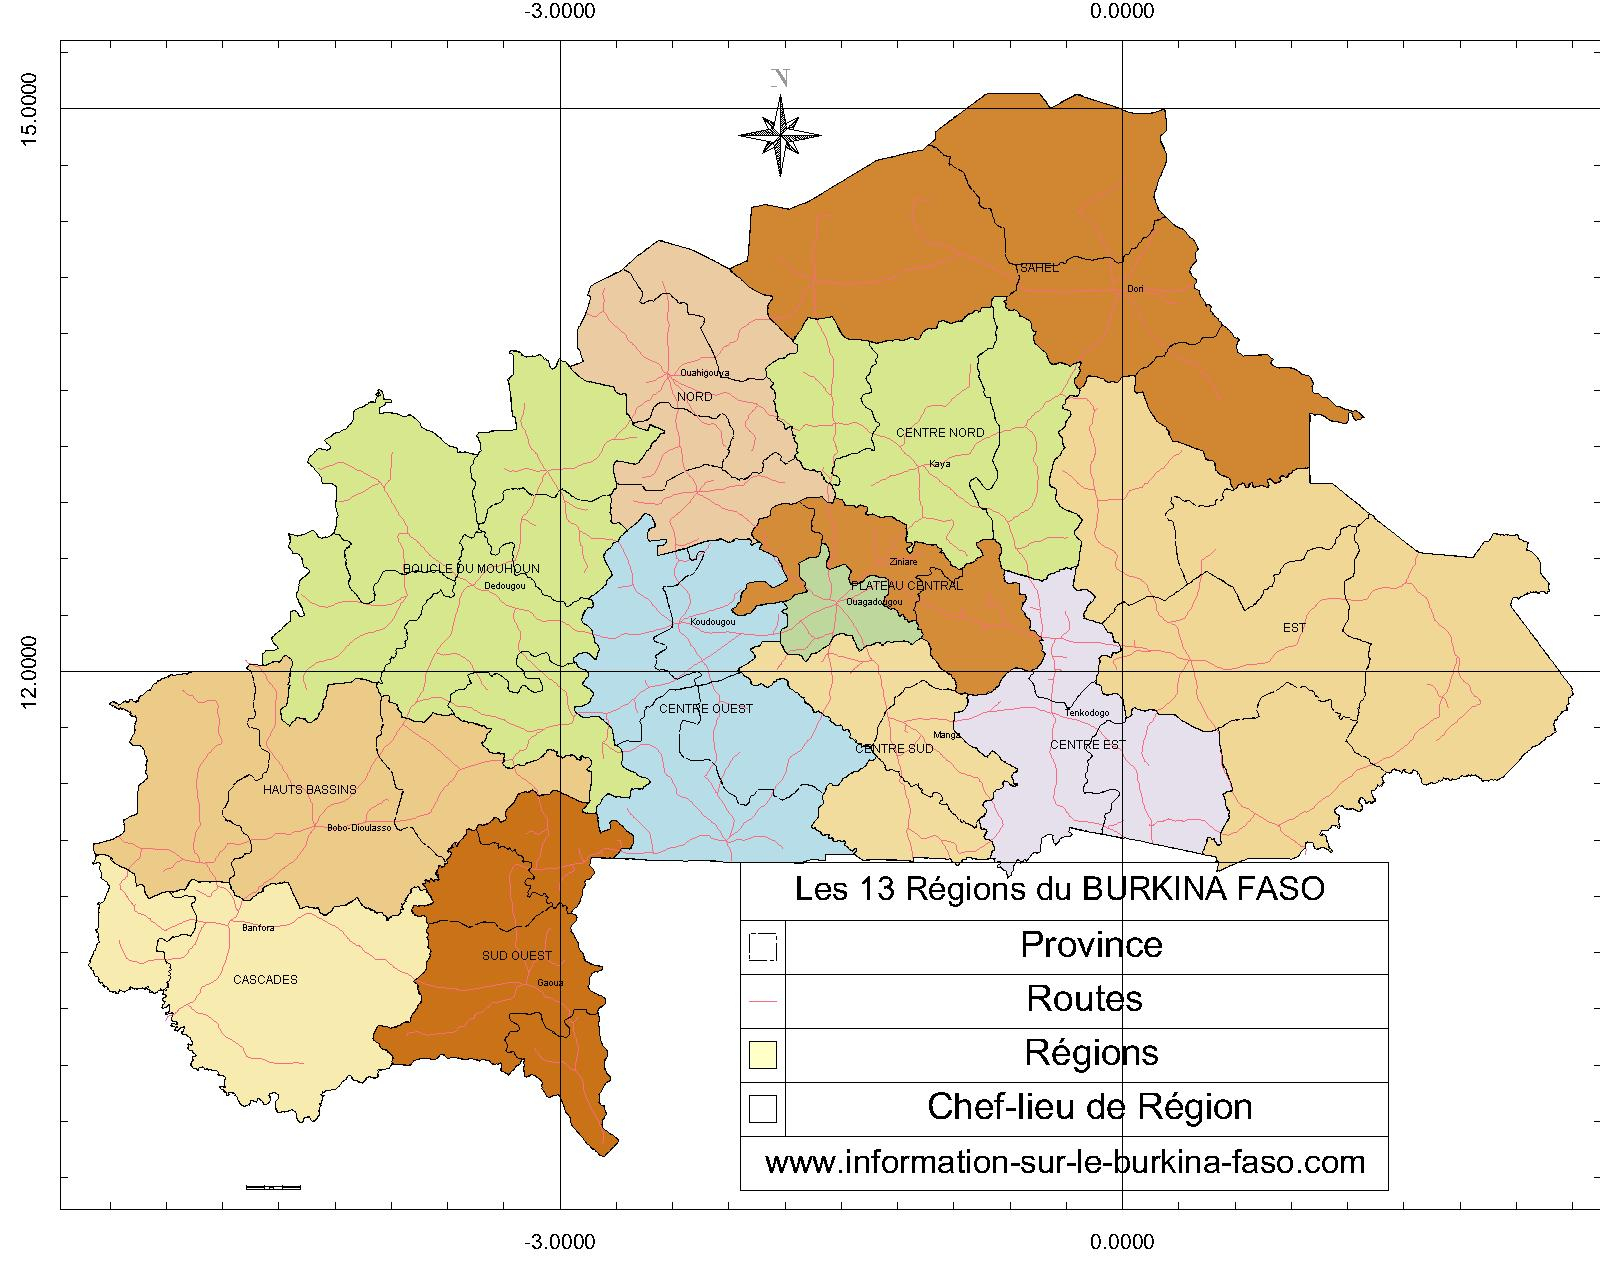 Le Burkina Faso: Toutes Les Cartes Thématiques Pour Vous. pour Les 13 Régions